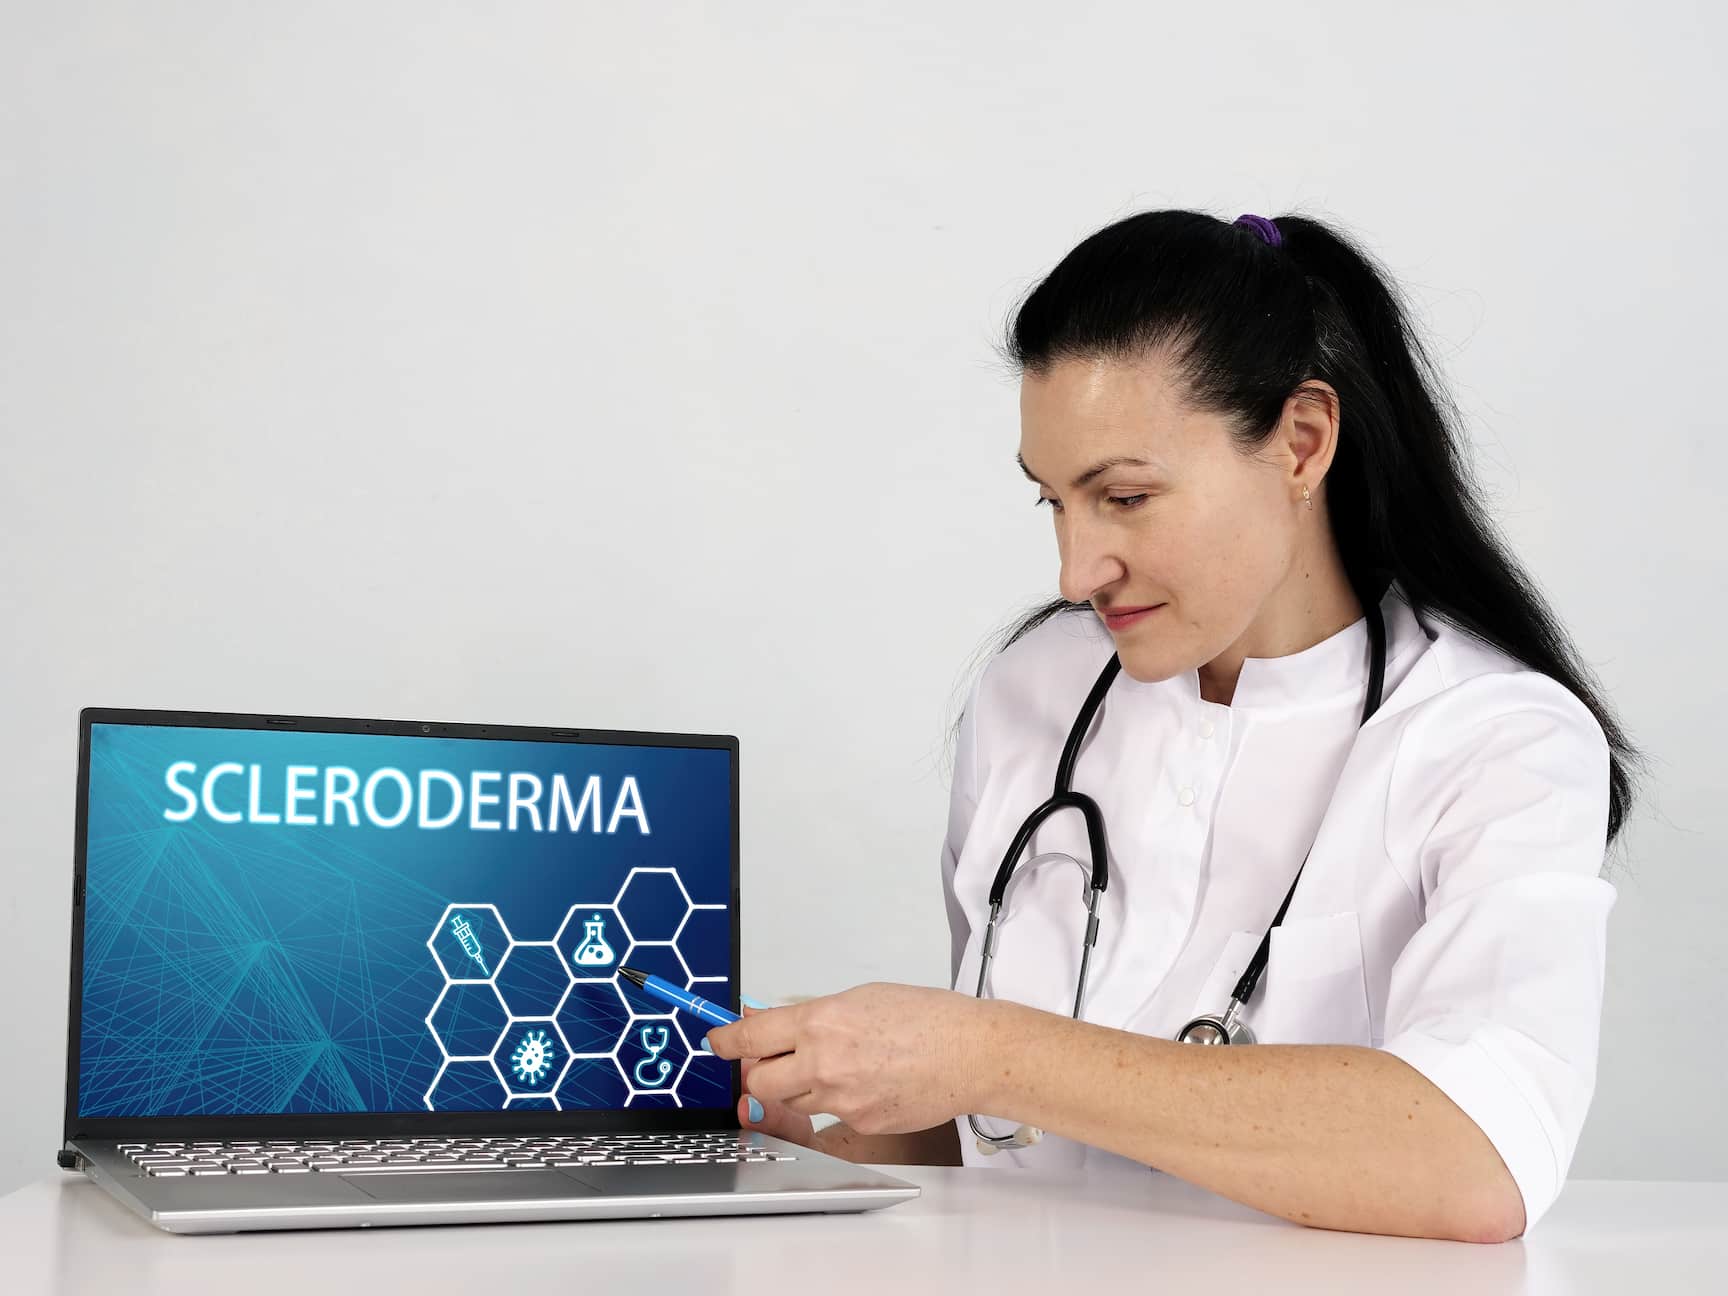 Turkiye scleroderma treatment procedure